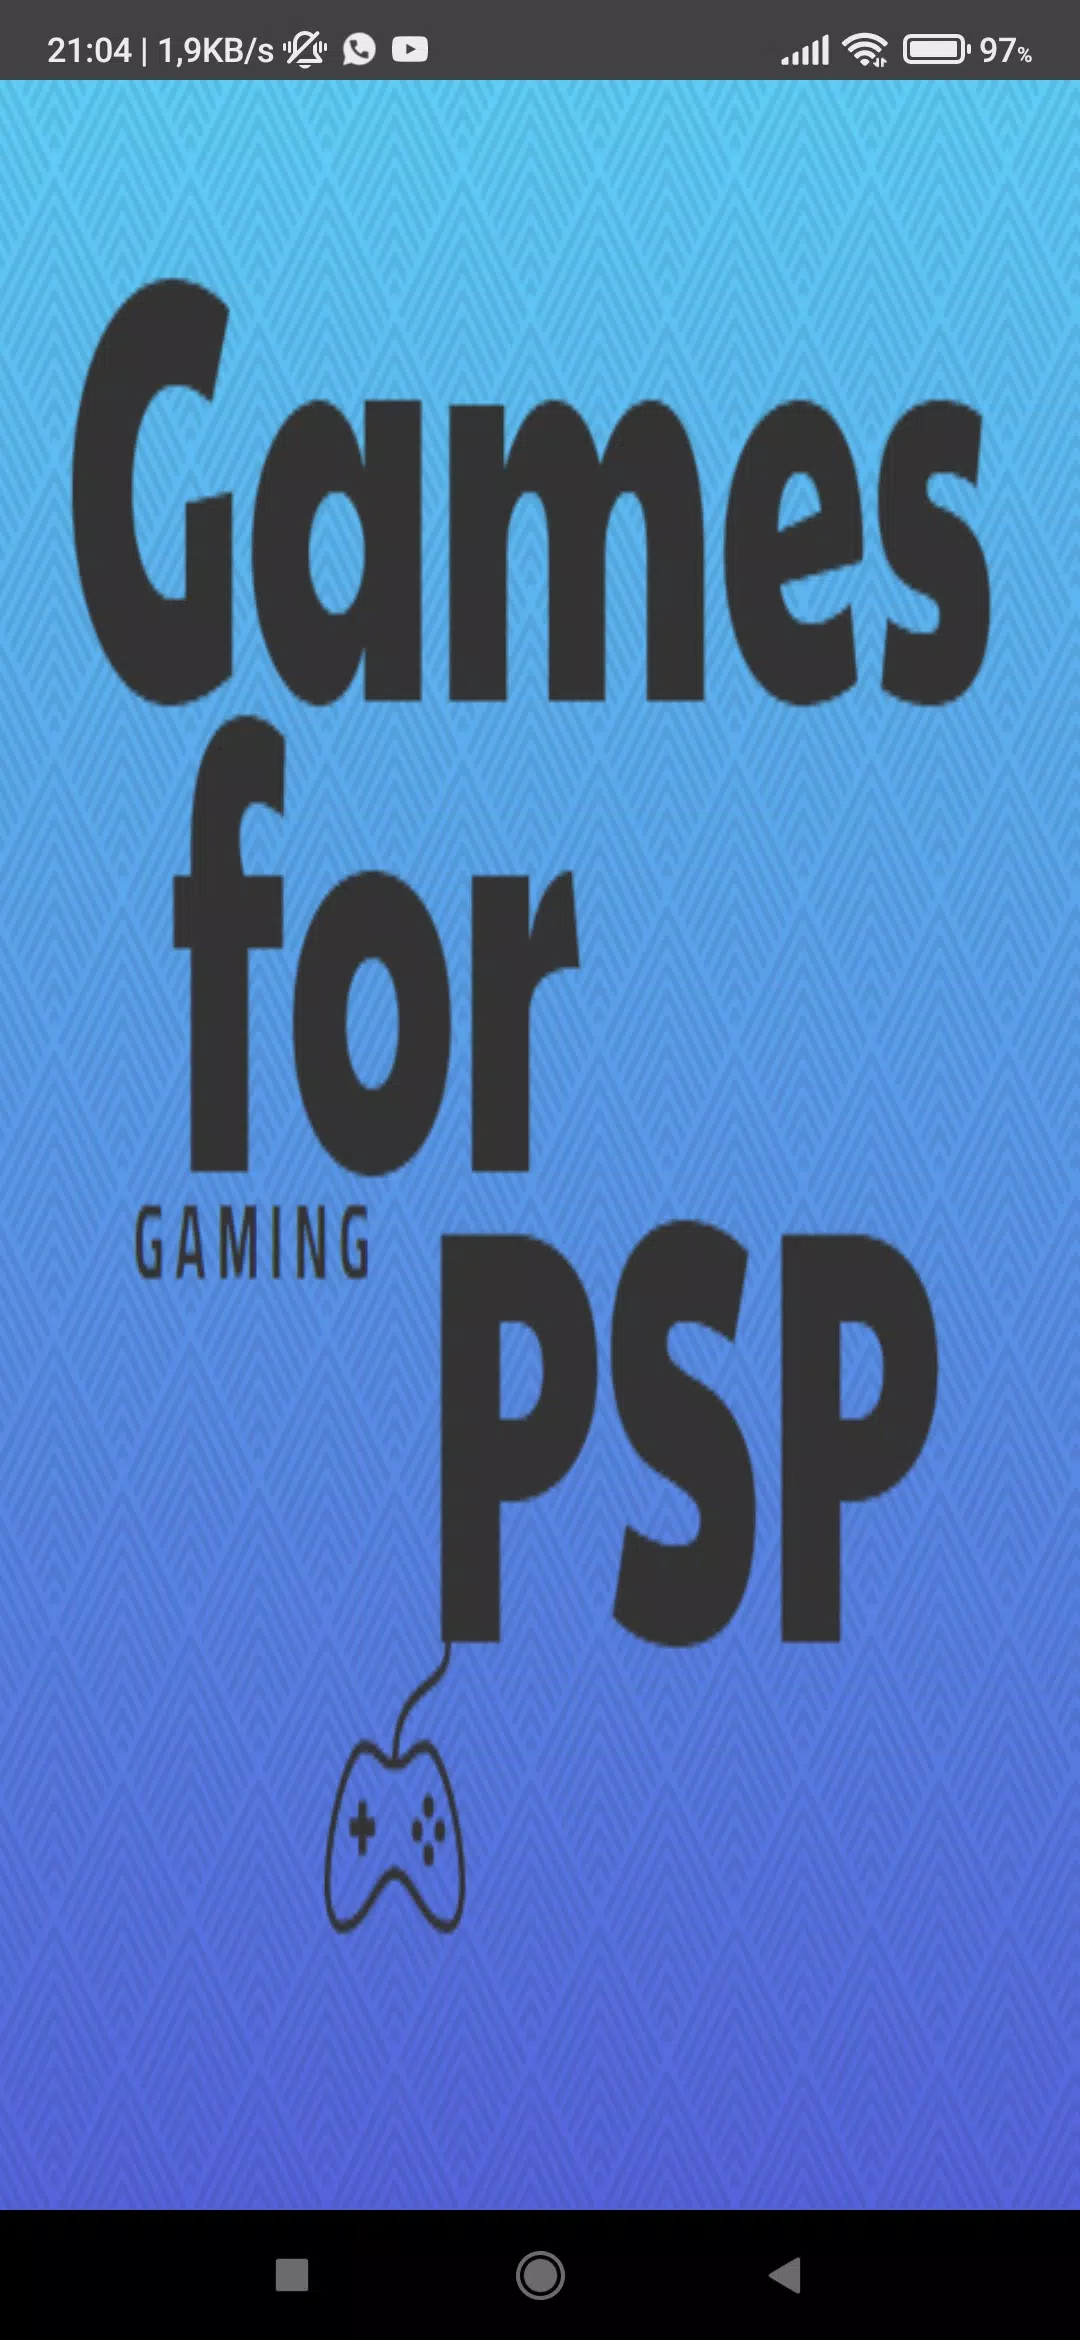 Melhores Jogos da PSP Com BJ - Vendo meus games de ppsspp (psp